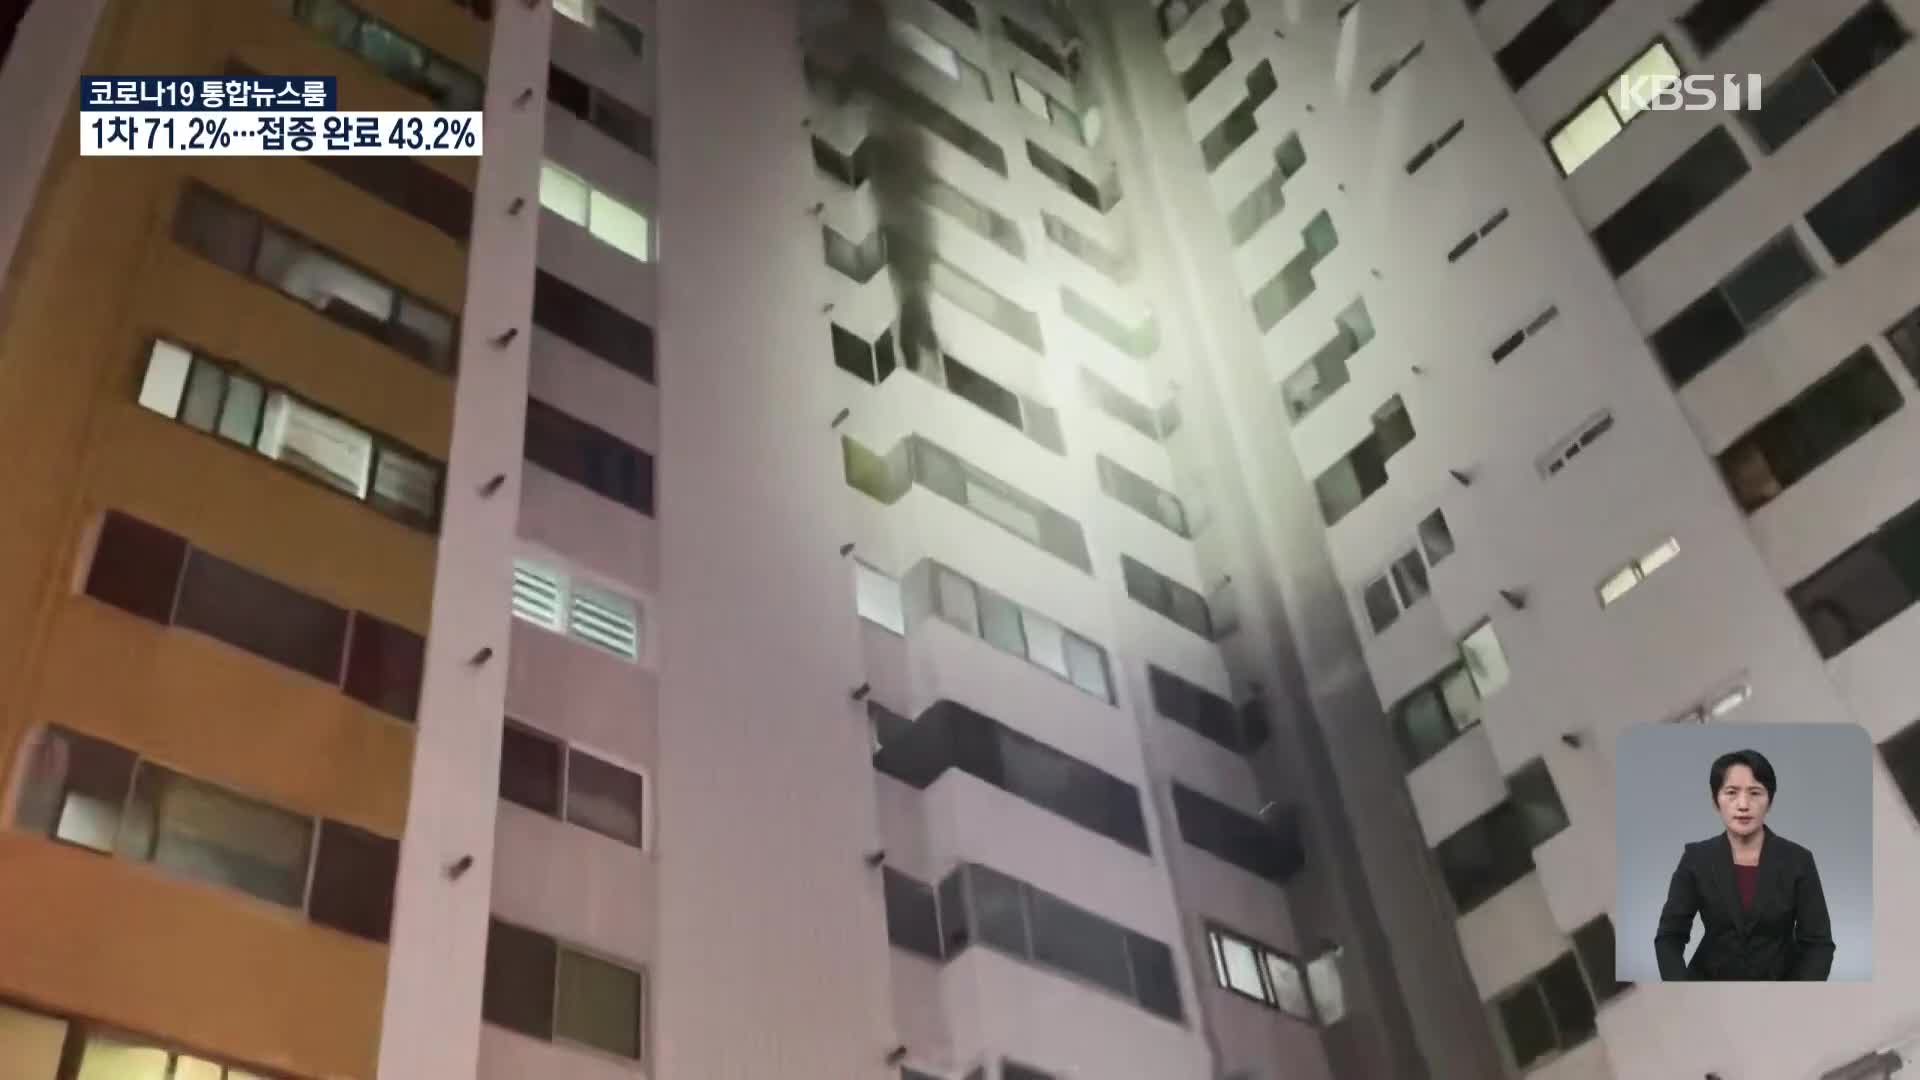 어젯밤 울산 아파트에서 불, 주민 80명 대피…밤사이 곳곳 화재